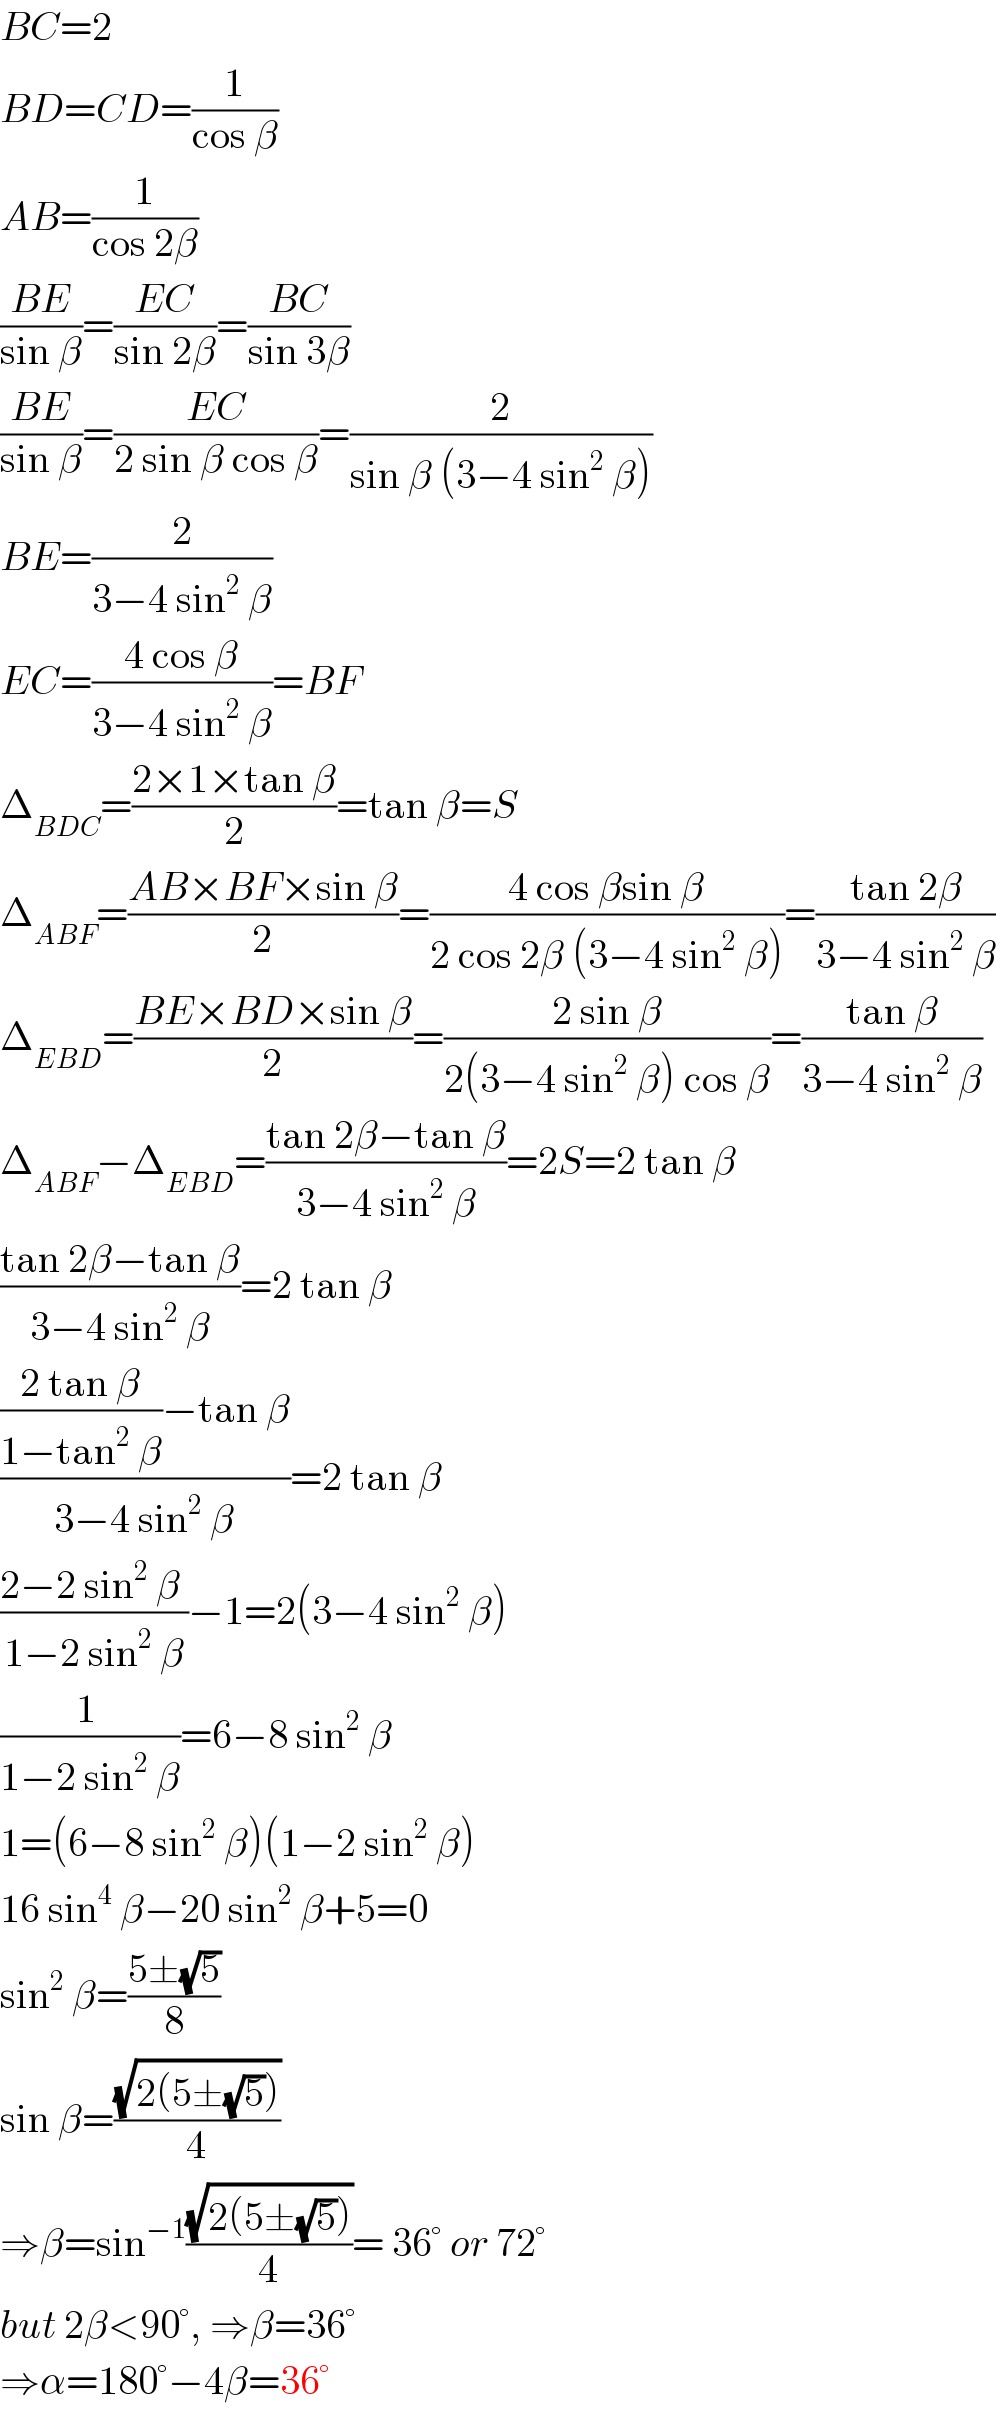 BC=2  BD=CD=(1/(cos β))  AB=(1/(cos 2β))  ((BE)/(sin β))=((EC)/(sin 2β))=((BC)/(sin 3β))  ((BE)/(sin β))=((EC)/(2 sin β cos β))=(2/(sin β (3−4 sin^2  β)))  BE=(2/(3−4 sin^2  β))  EC=((4 cos β)/(3−4 sin^2  β))=BF  Δ_(BDC) =((2×1×tan β)/2)=tan β=S  Δ_(ABF) =((AB×BF×sin β)/2)=((4 cos βsin β)/(2 cos 2β (3−4 sin^2  β)))=((tan 2β)/(3−4 sin^2  β))  Δ_(EBD) =((BE×BD×sin β)/2)=((2 sin β)/(2(3−4 sin^2  β) cos β))=((tan β)/(3−4 sin^2  β))  Δ_(ABF) −Δ_(EBD) =((tan 2β−tan β)/(3−4 sin^2  β))=2S=2 tan β  ((tan 2β−tan β)/(3−4 sin^2  β))=2 tan β  ((((2 tan β)/(1−tan^2  β))−tan β)/(3−4 sin^2  β))=2 tan β  ((2−2 sin^2  β )/(1−2 sin^2  β))−1=2(3−4 sin^2  β)  ((1 )/(1−2 sin^2  β))=6−8 sin^2  β  1=(6−8 sin^2  β)(1−2 sin^2  β)  16 sin^4  β−20 sin^2  β+5=0  sin^2  β=((5±(√5))/8)  sin β=((√(2(5±(√5))))/4)  ⇒β=sin^(−1) ((√(2(5±(√5))))/4)= 36° or 72°  but 2β<90°, ⇒β=36°  ⇒α=180°−4β=36°  